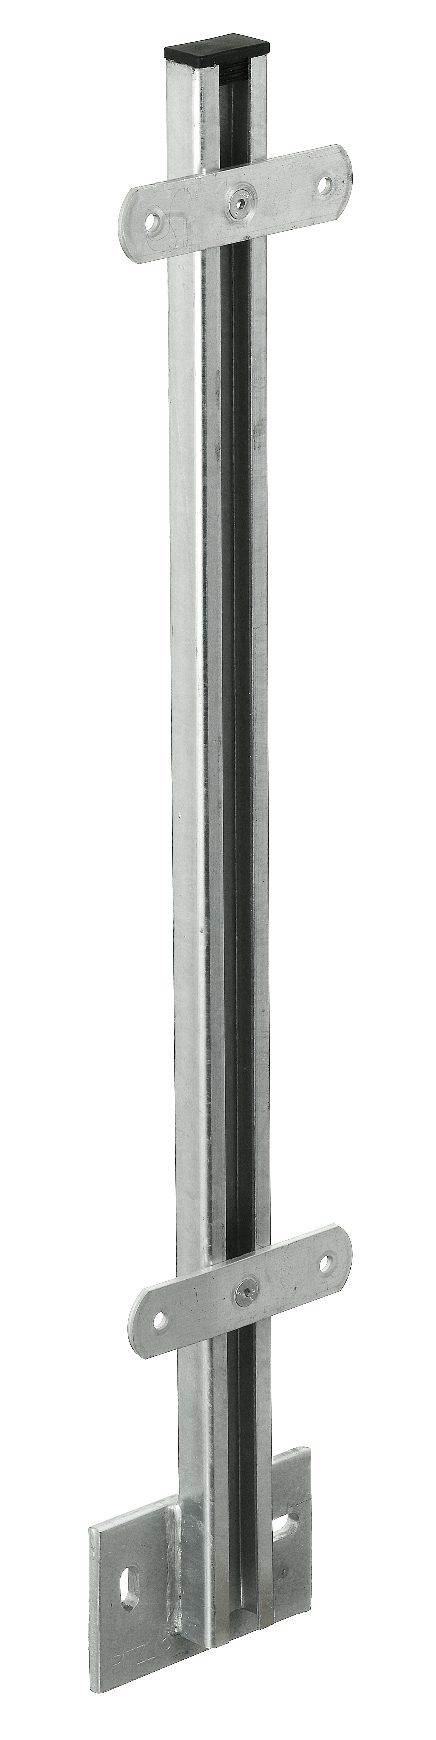 Geländerstützen GSP, C-Profil zum Andübeln, Höhe 1000 mm, incl. zwei Alu-Durchgangslaschen und einer Kunststoffkappe, fe